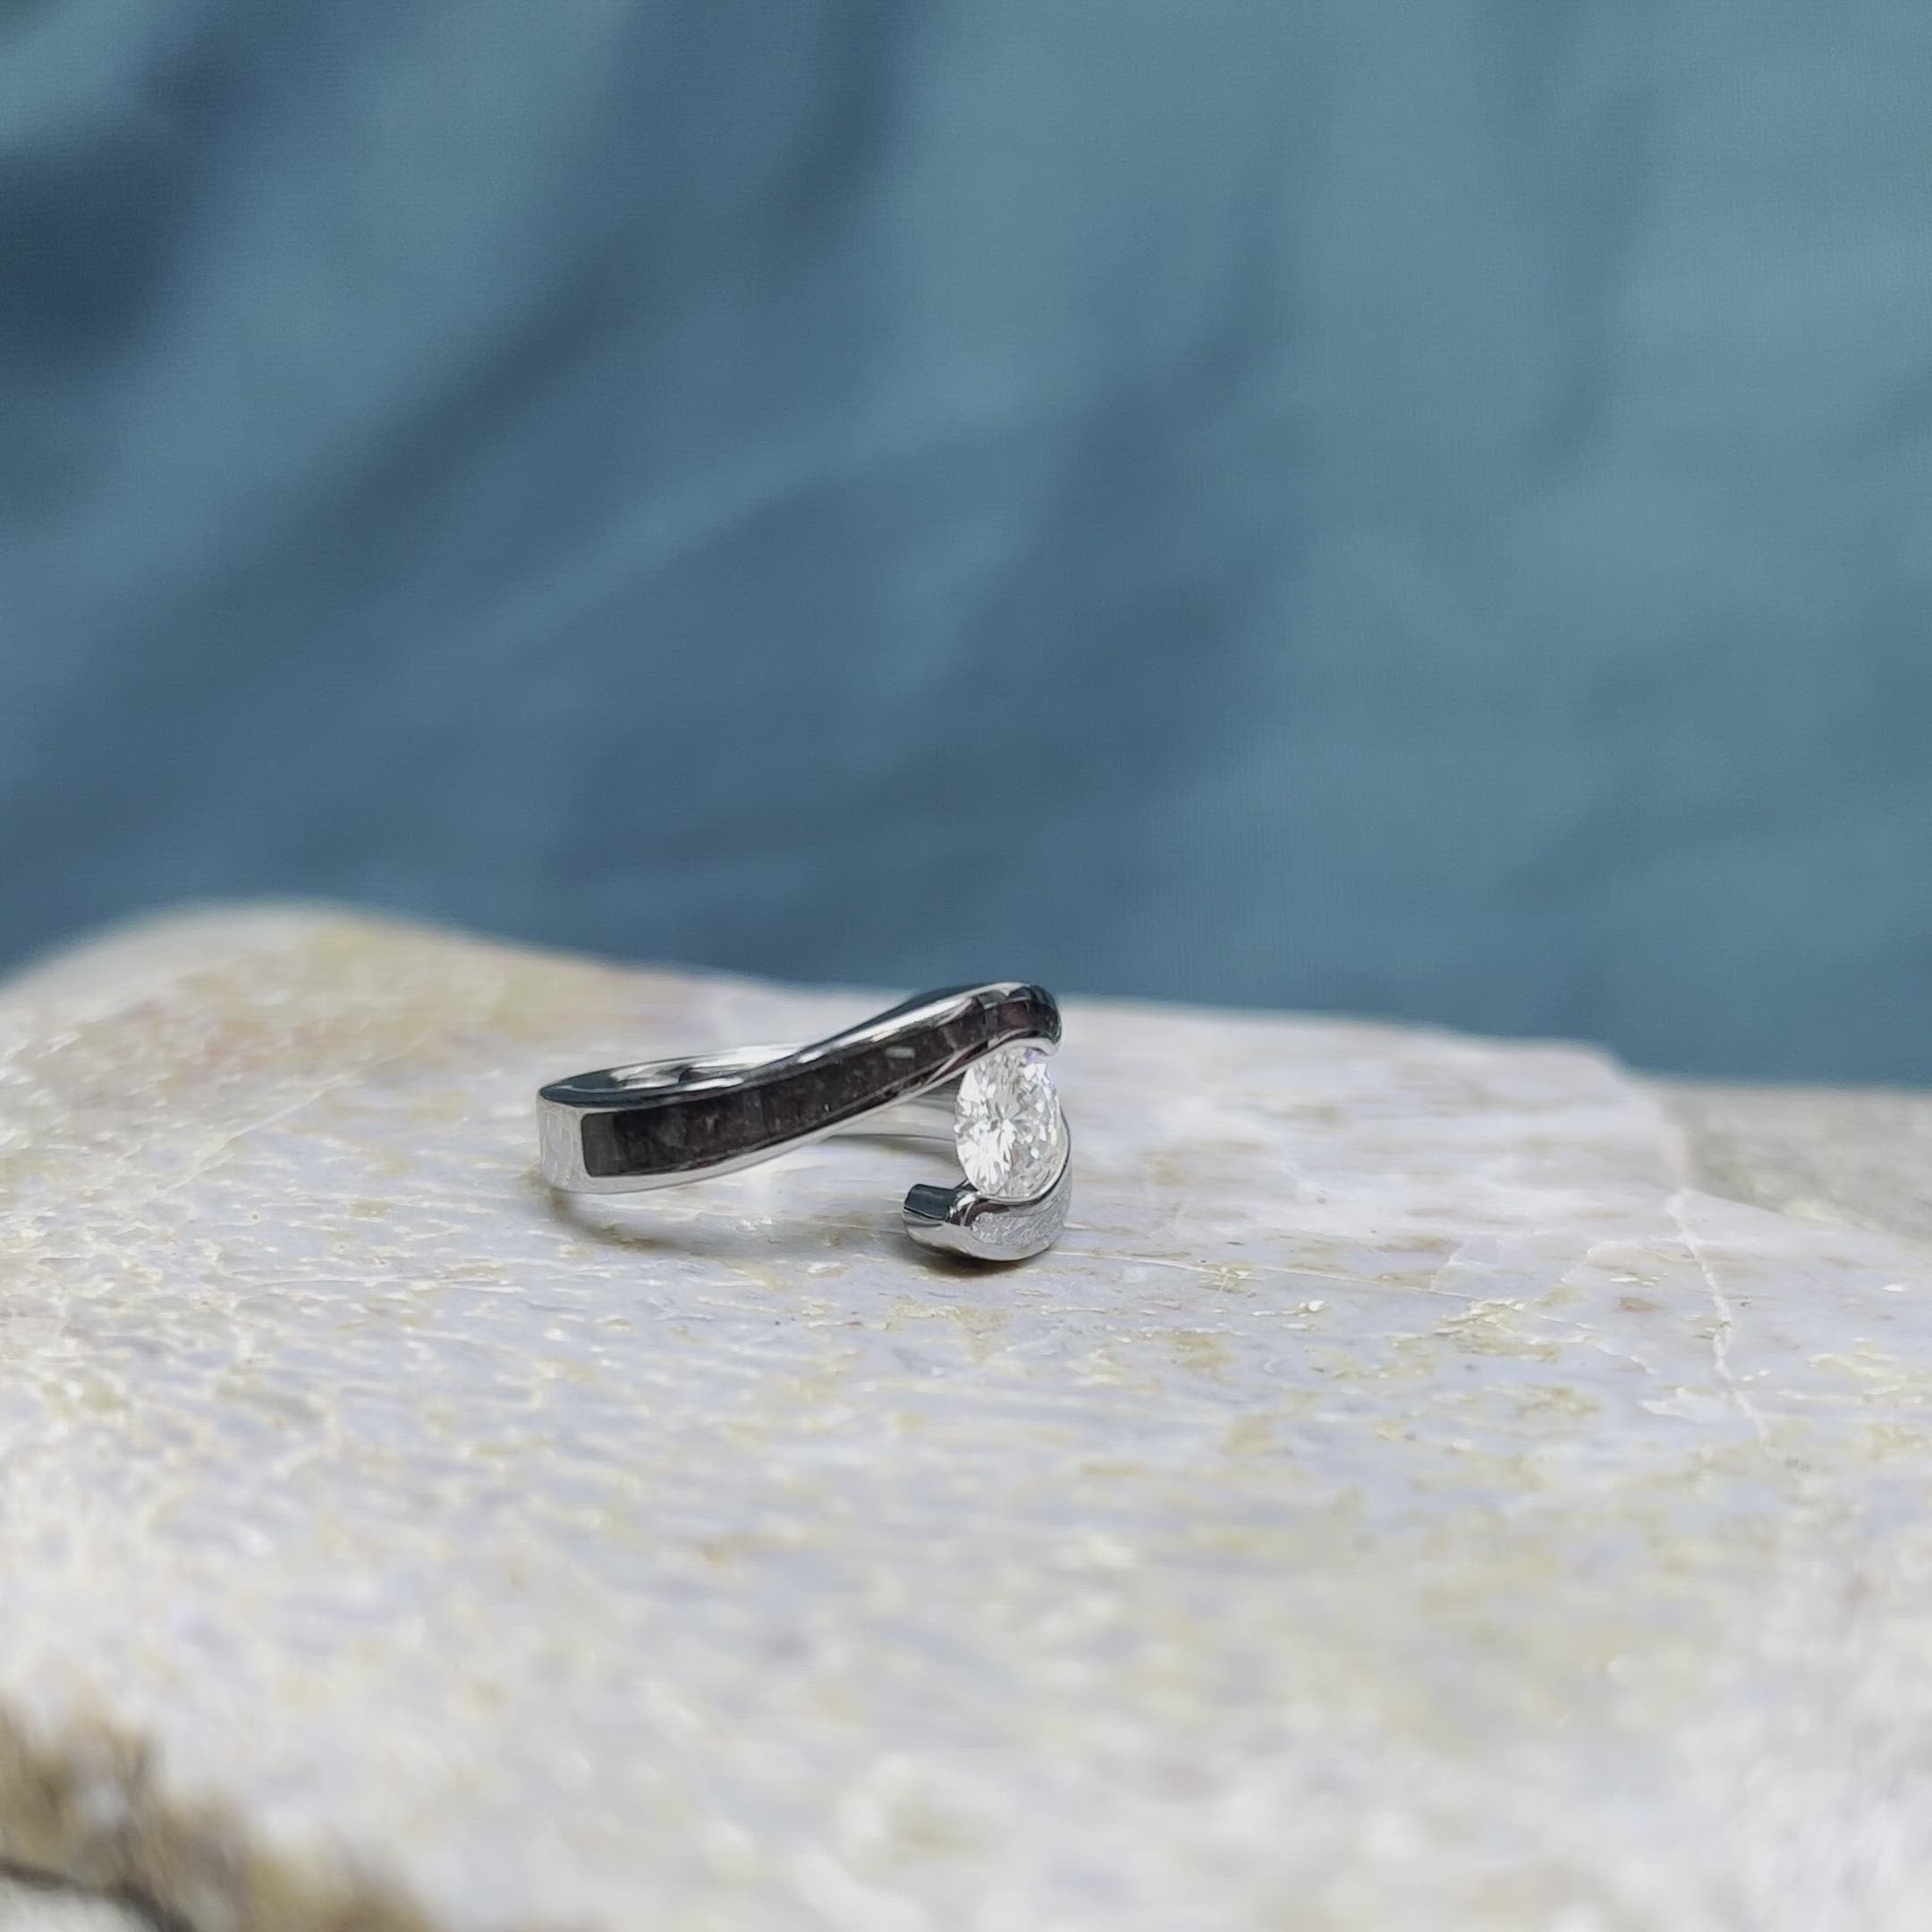 White Sapphire Engagement Ring, Titanium Meteorite Ring With Dinosaur Bone